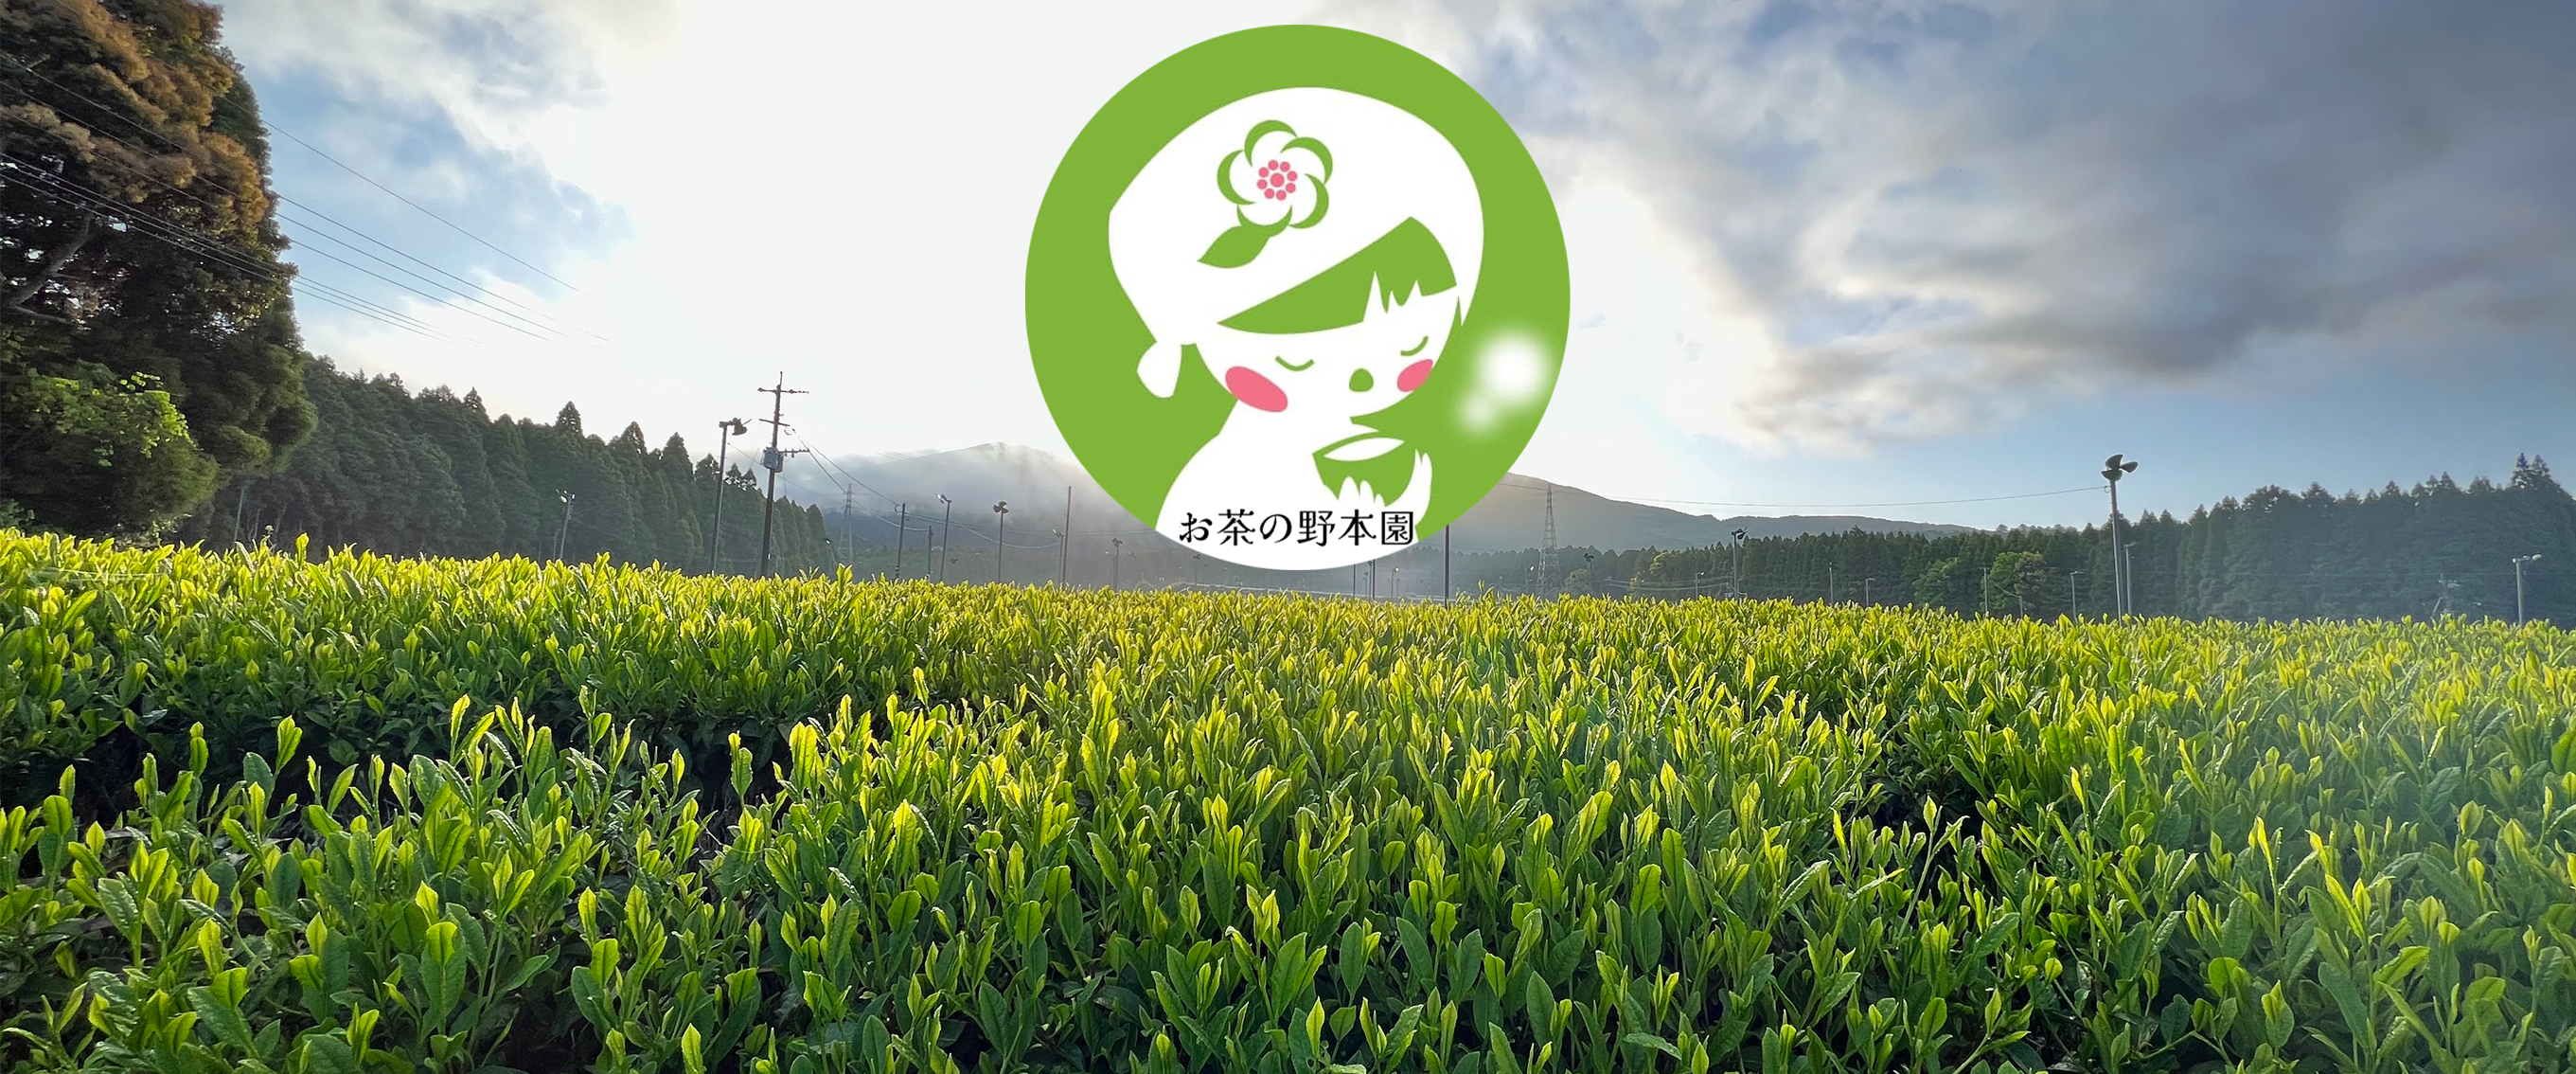 鹿児島県湧水町のお茶農家「お茶の野本園」公式販売サイト